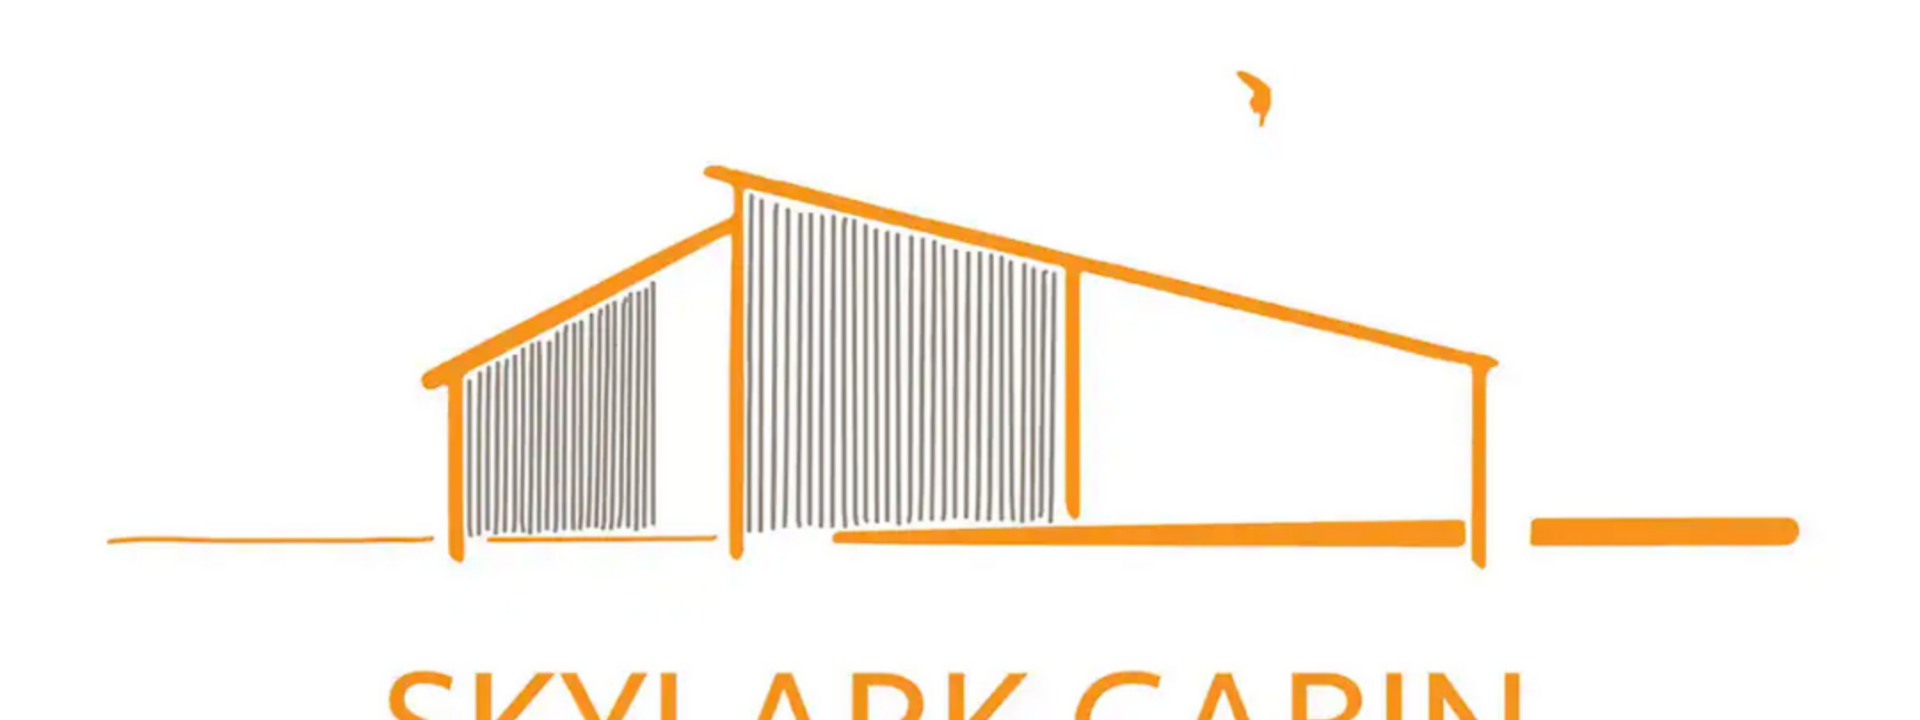 Skylark Cabin logo.png